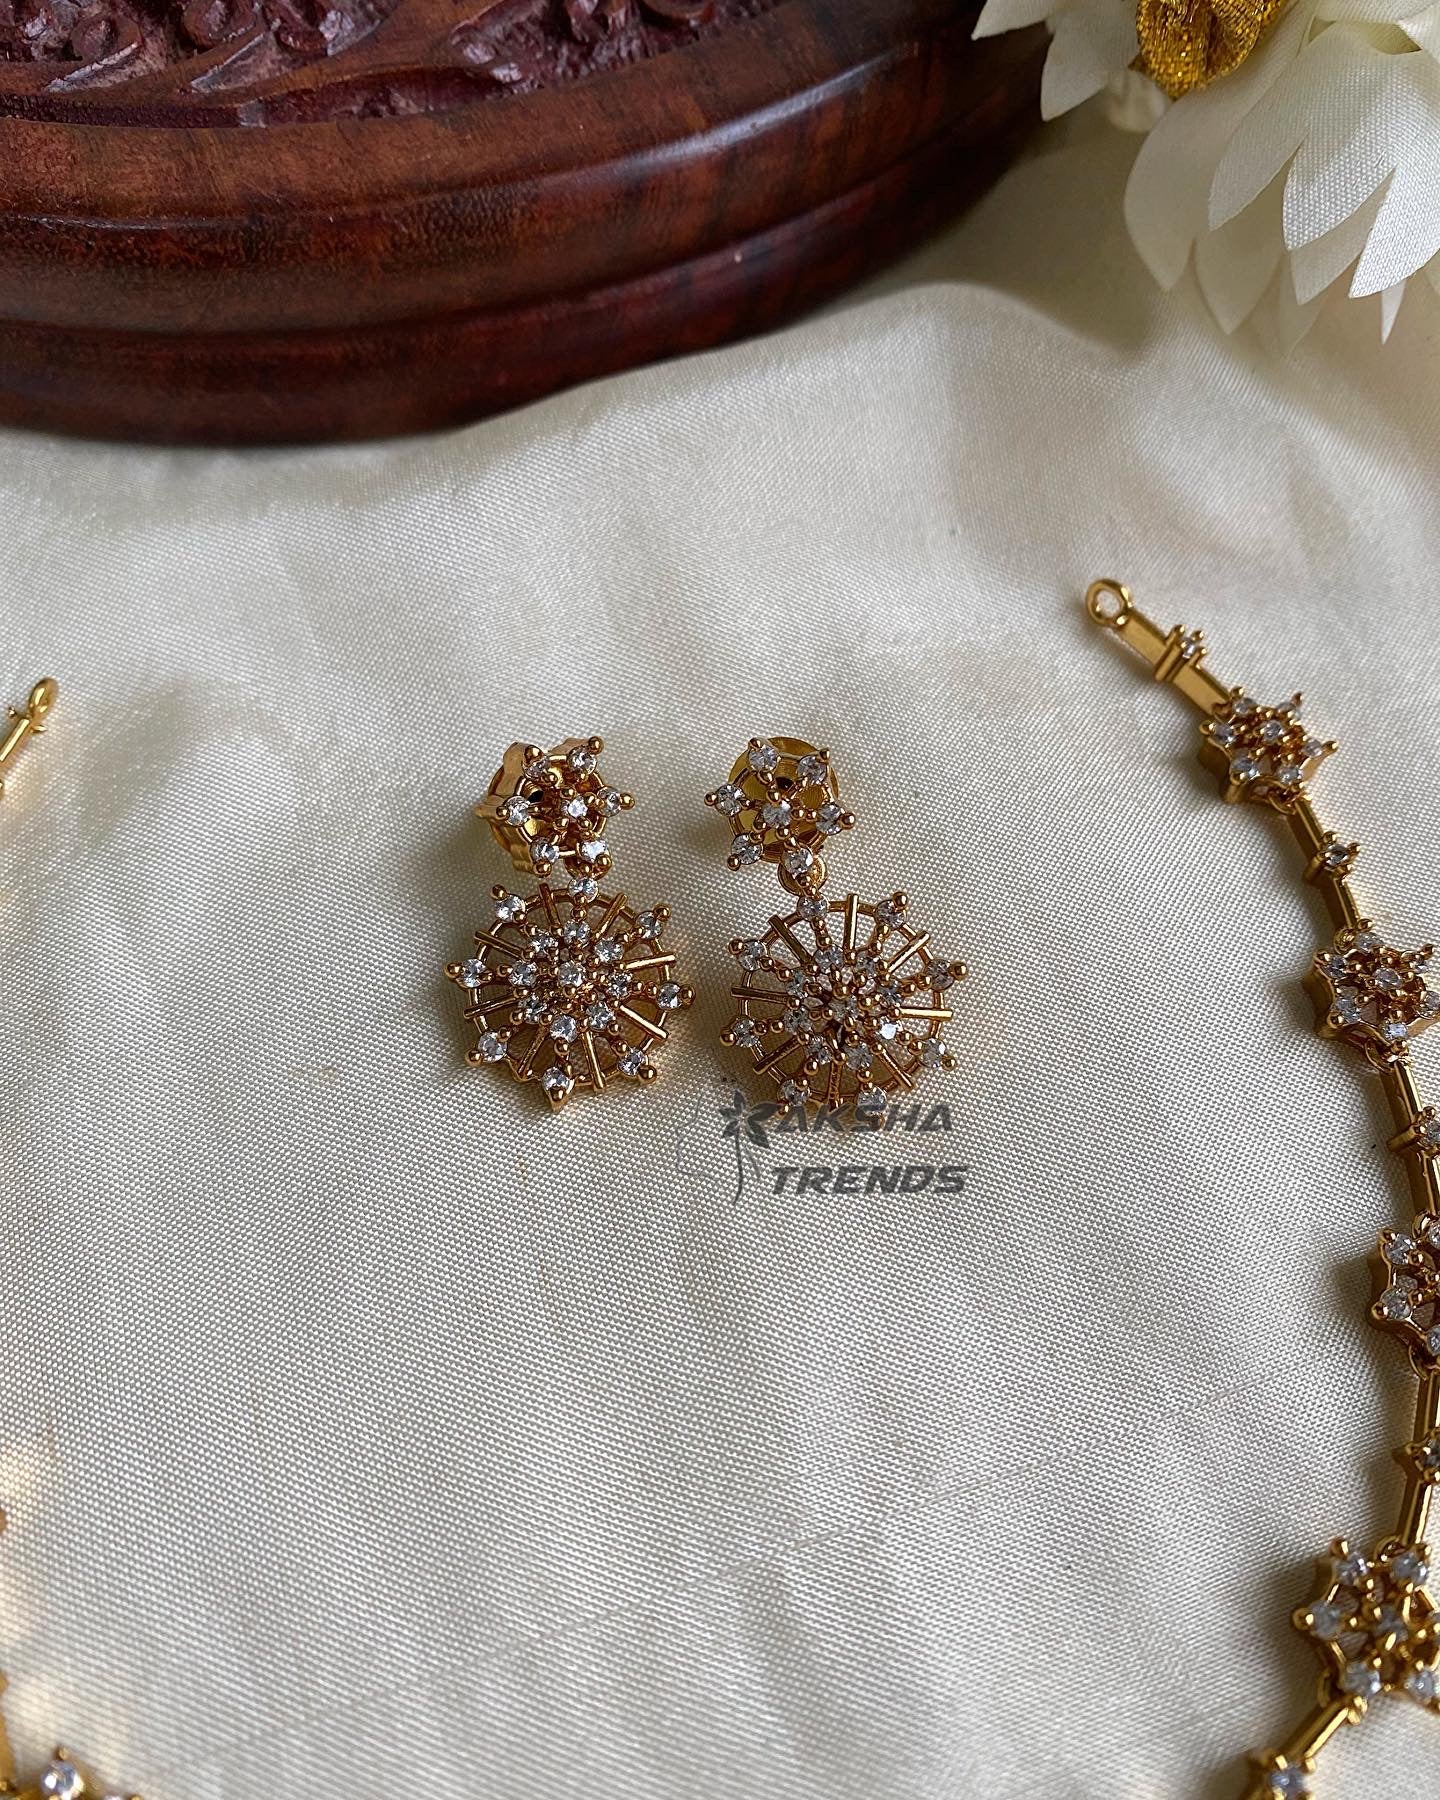 Floral Nakshatra diamond necklace Aksha Trends